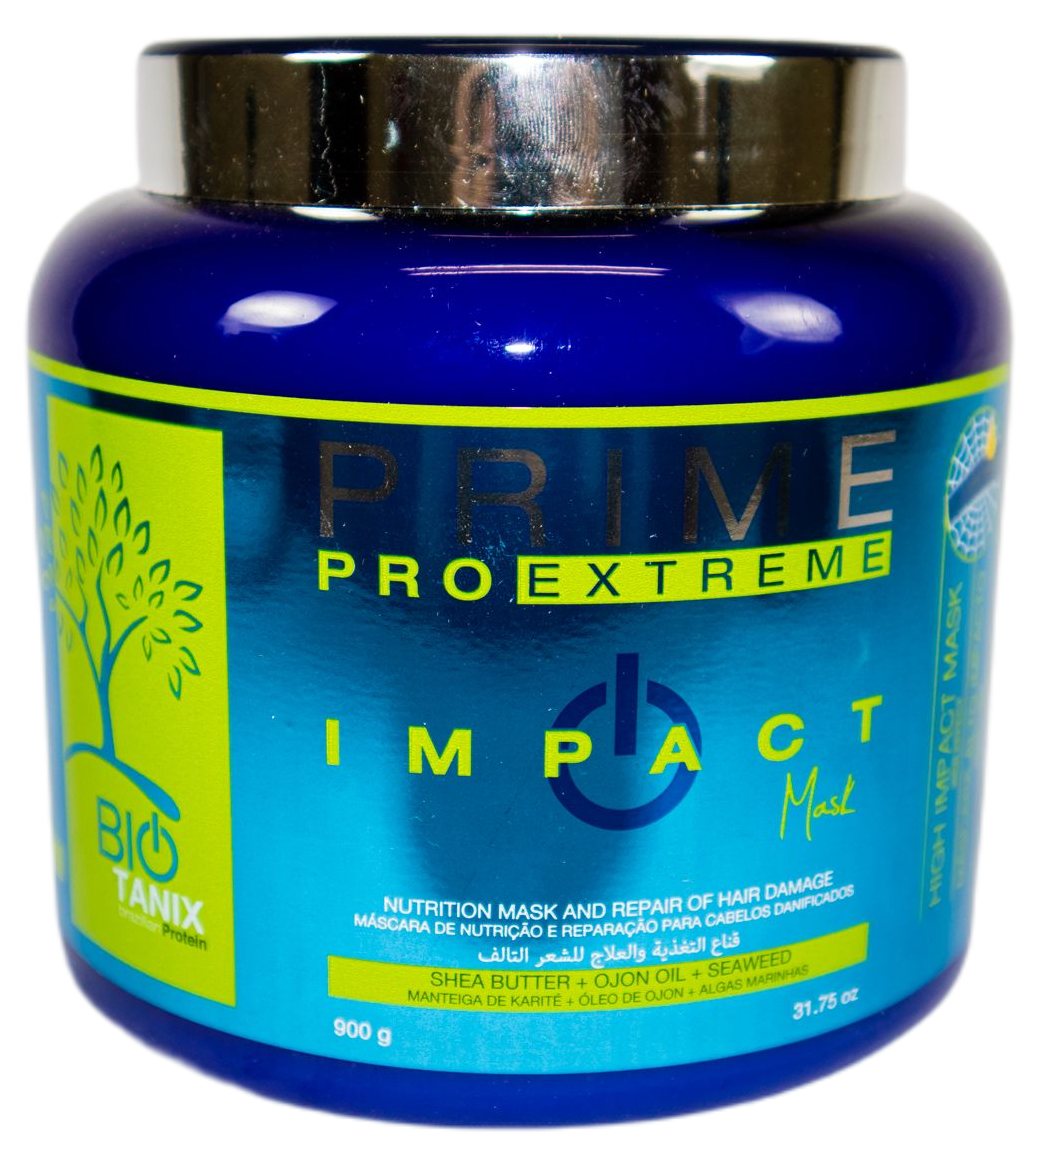 Prime Pro Extreme Brazilian Keratin Treatment Bio Tanix Impact Shock Mask Hair Treatment 900g - Prime Pro